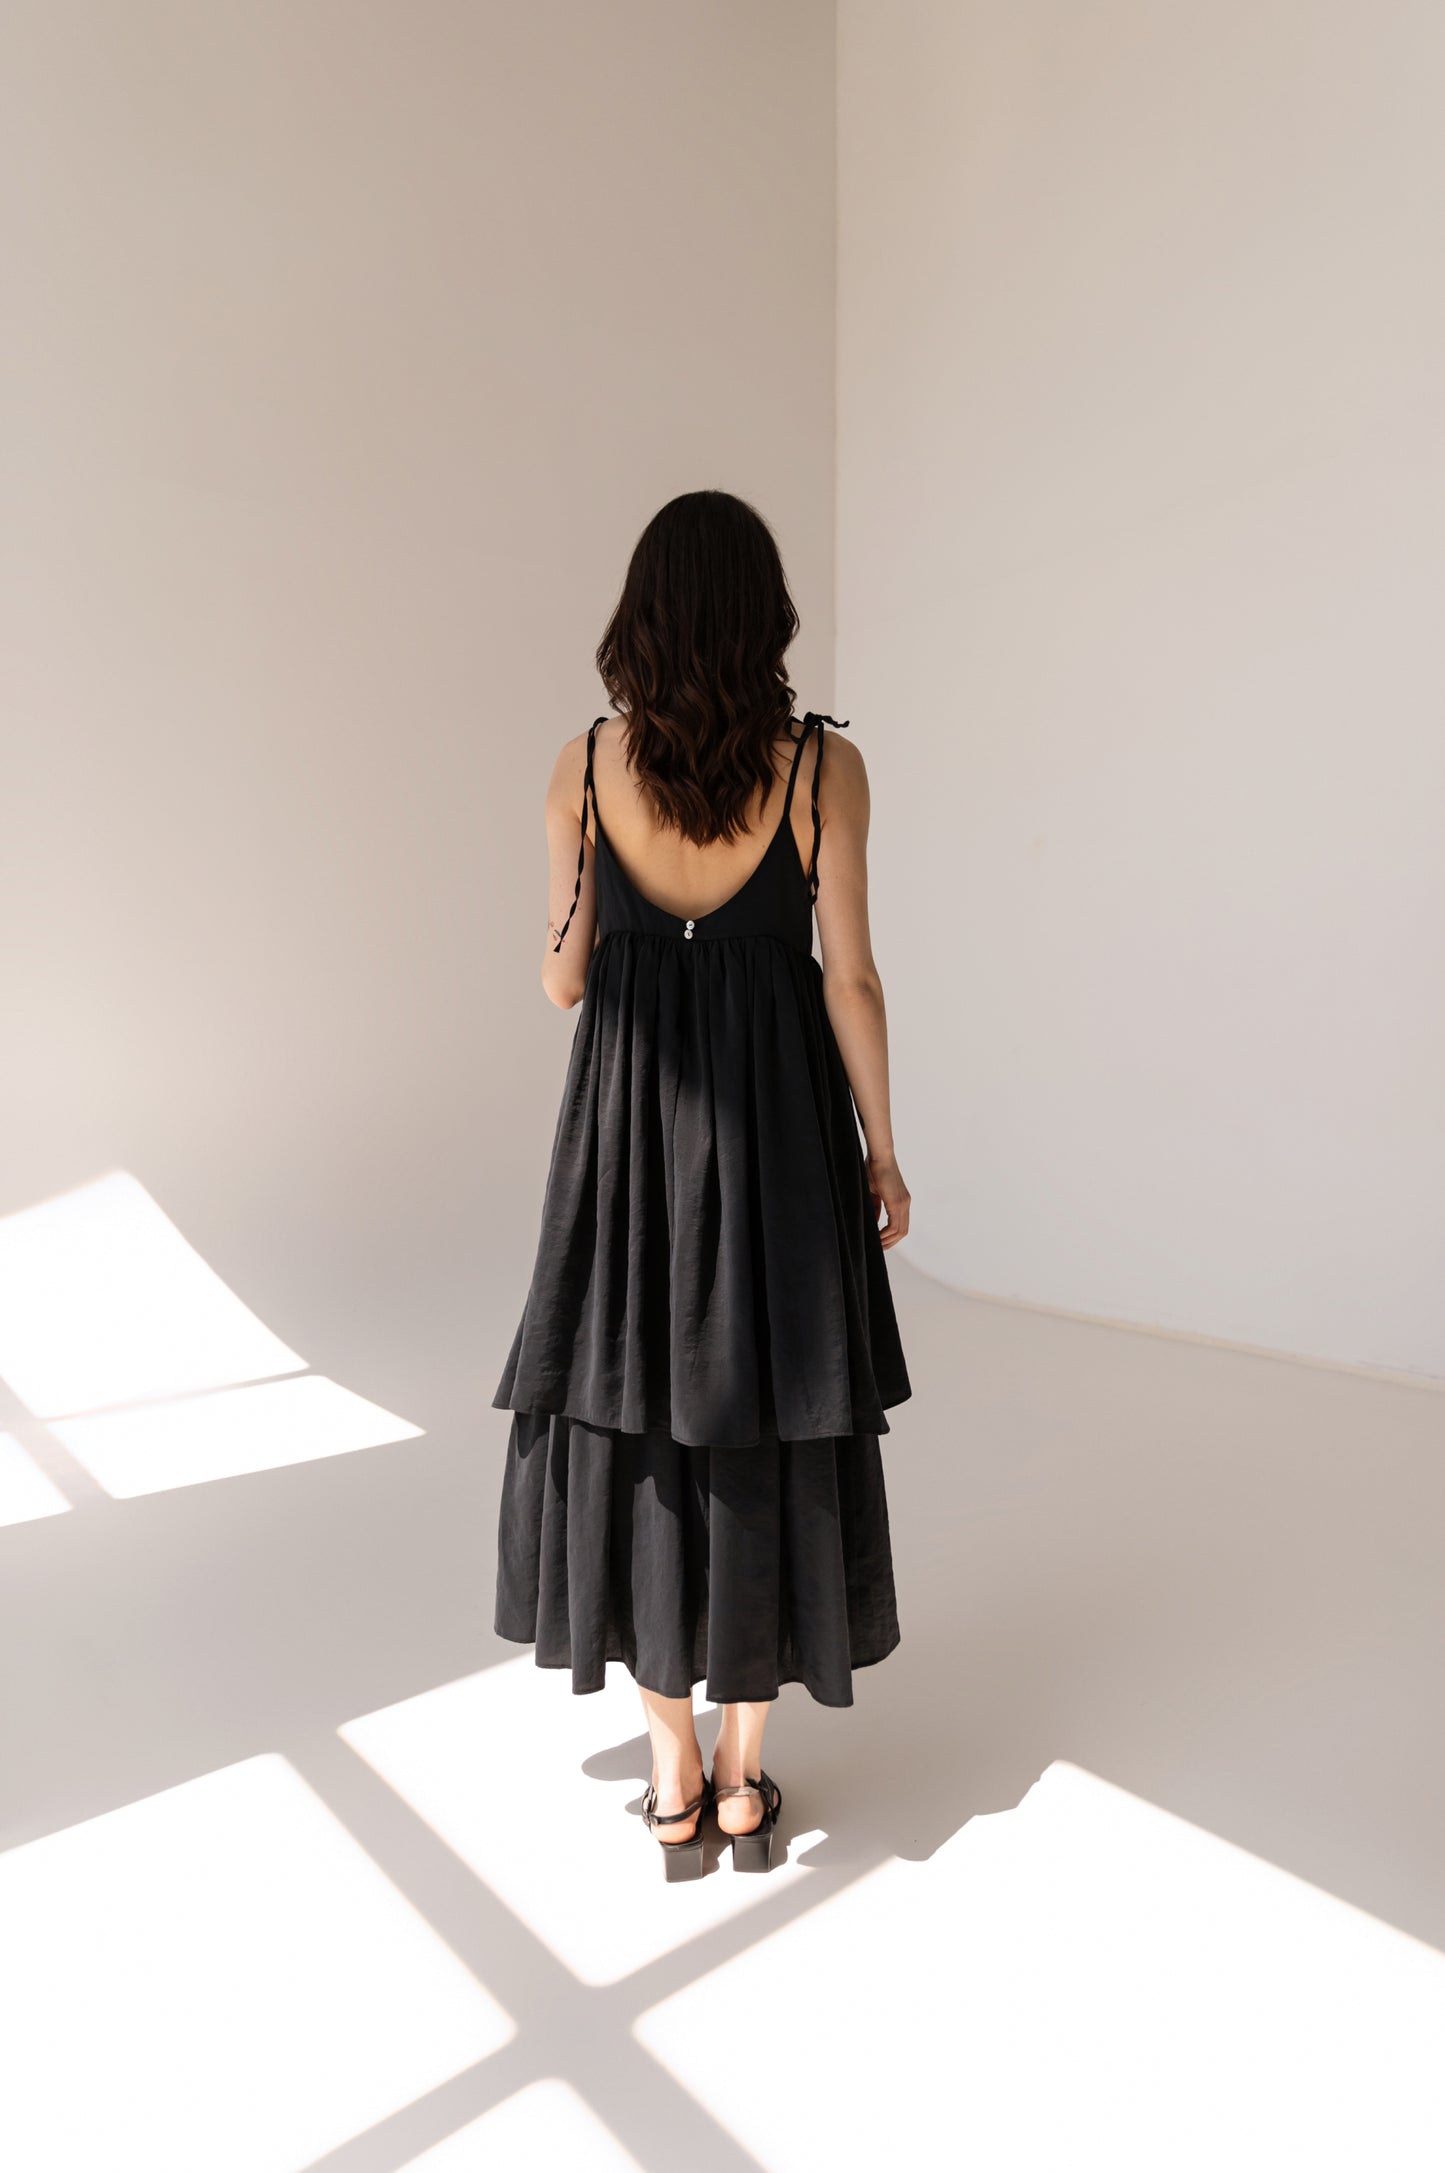 Two-layer black dress